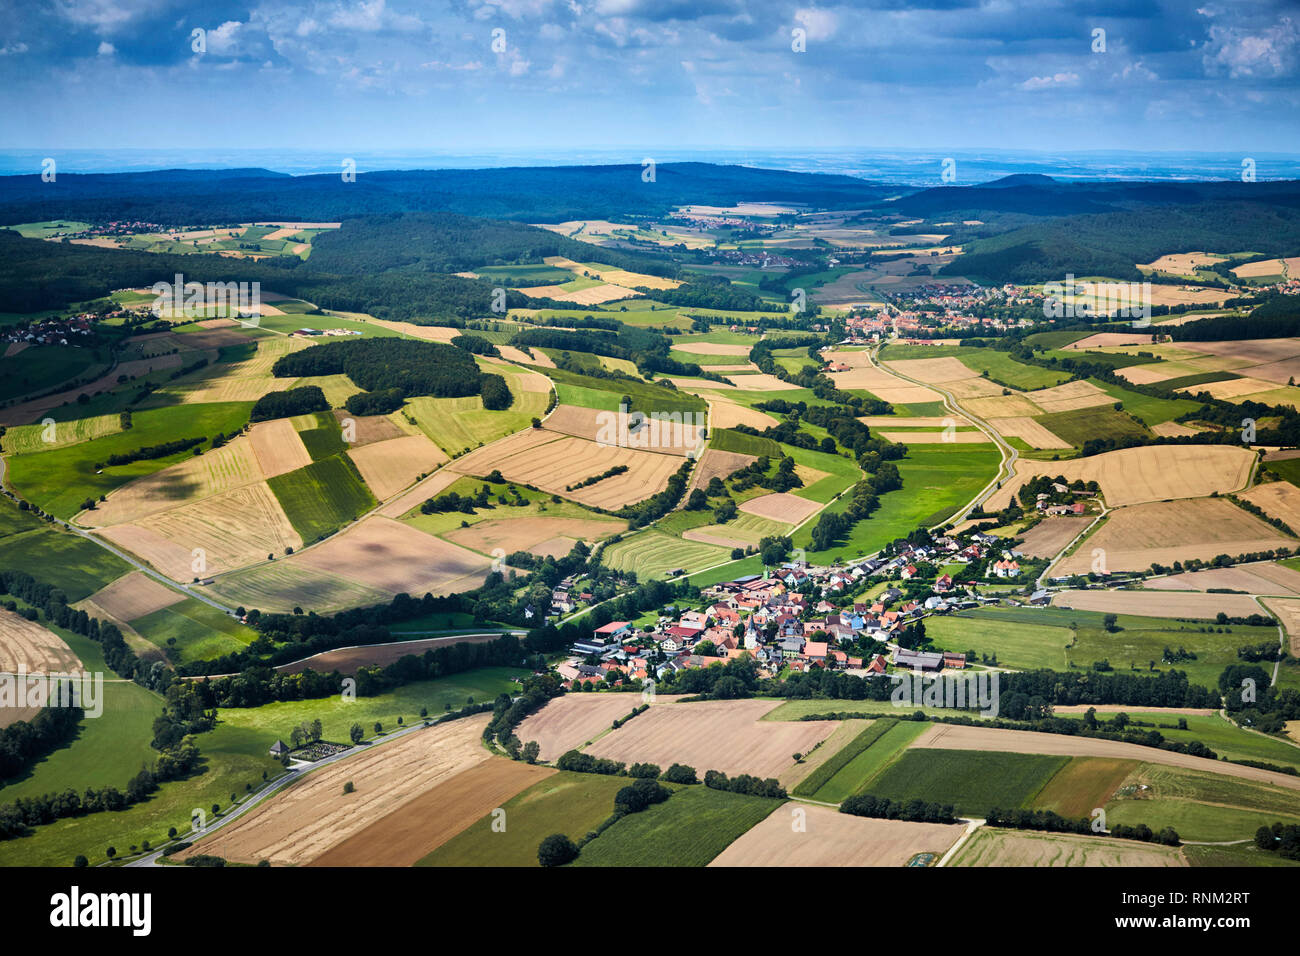 Die Stadt Theinheim aus der Luft gesehen. Gemeinde Rauhenebrach - Landkreis Hassberg, Bayern, Deutschland Stockfoto